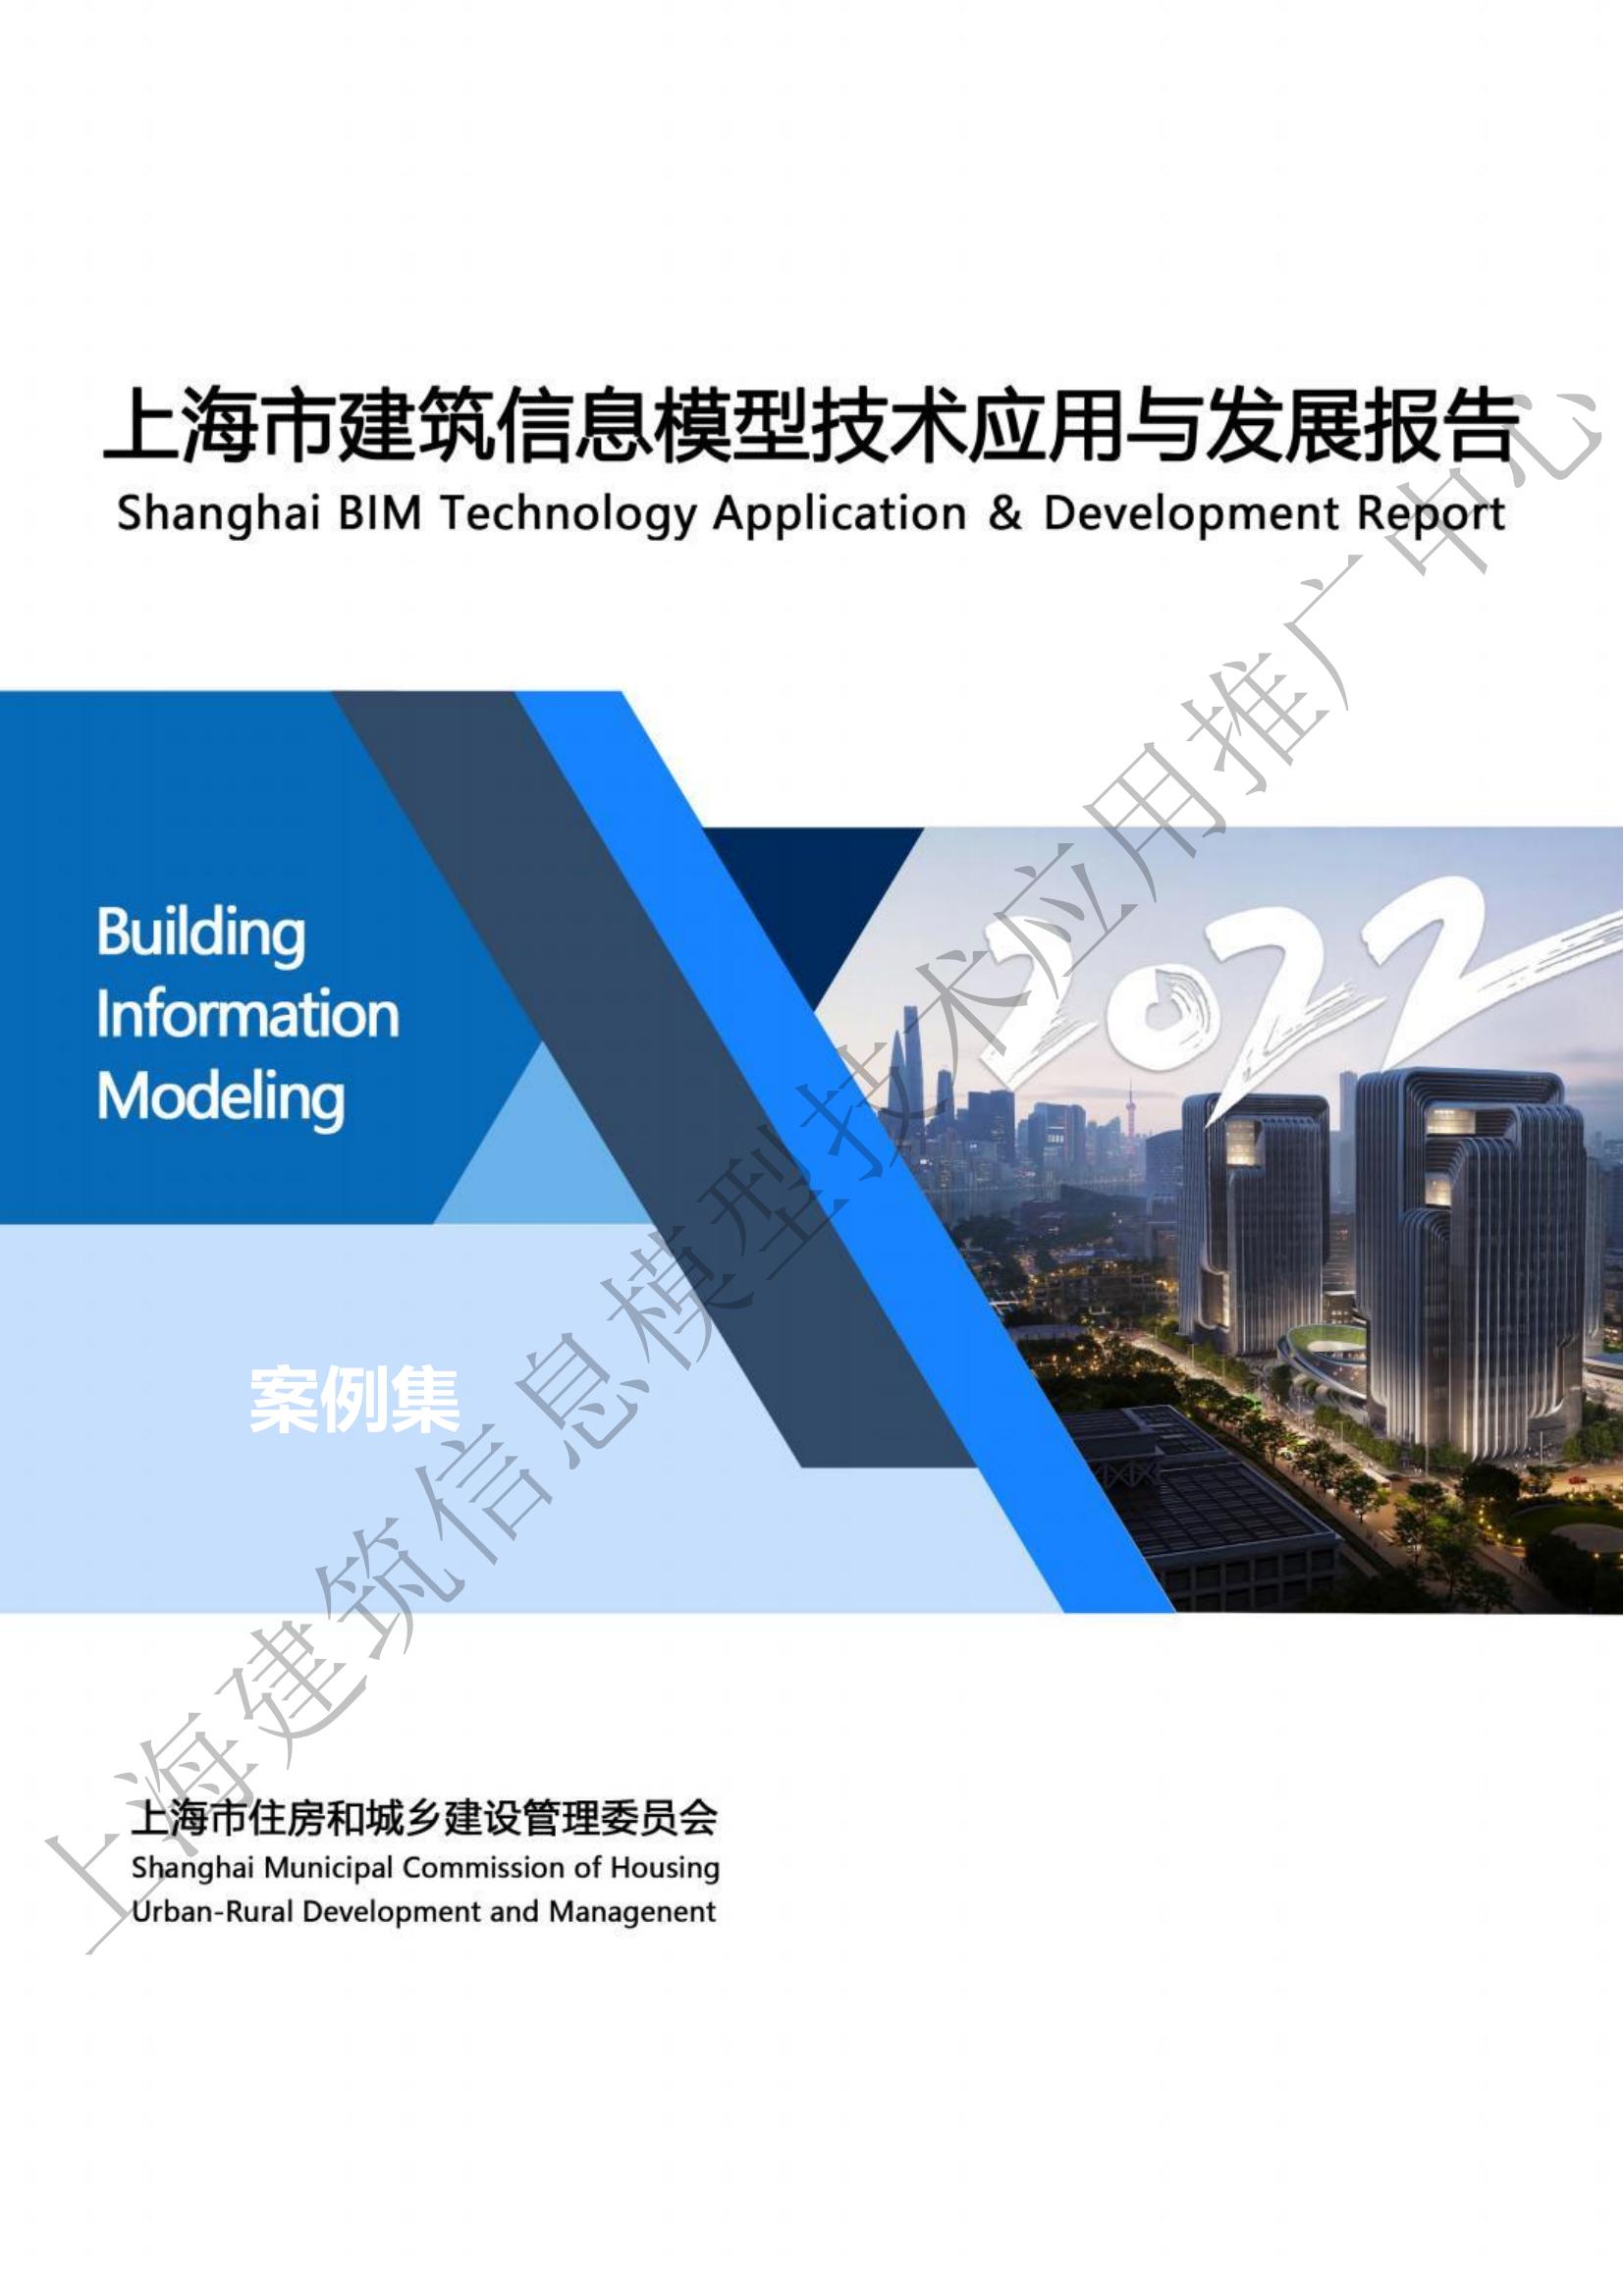 《2022上海市BIM技术应用与发展报告》案例集